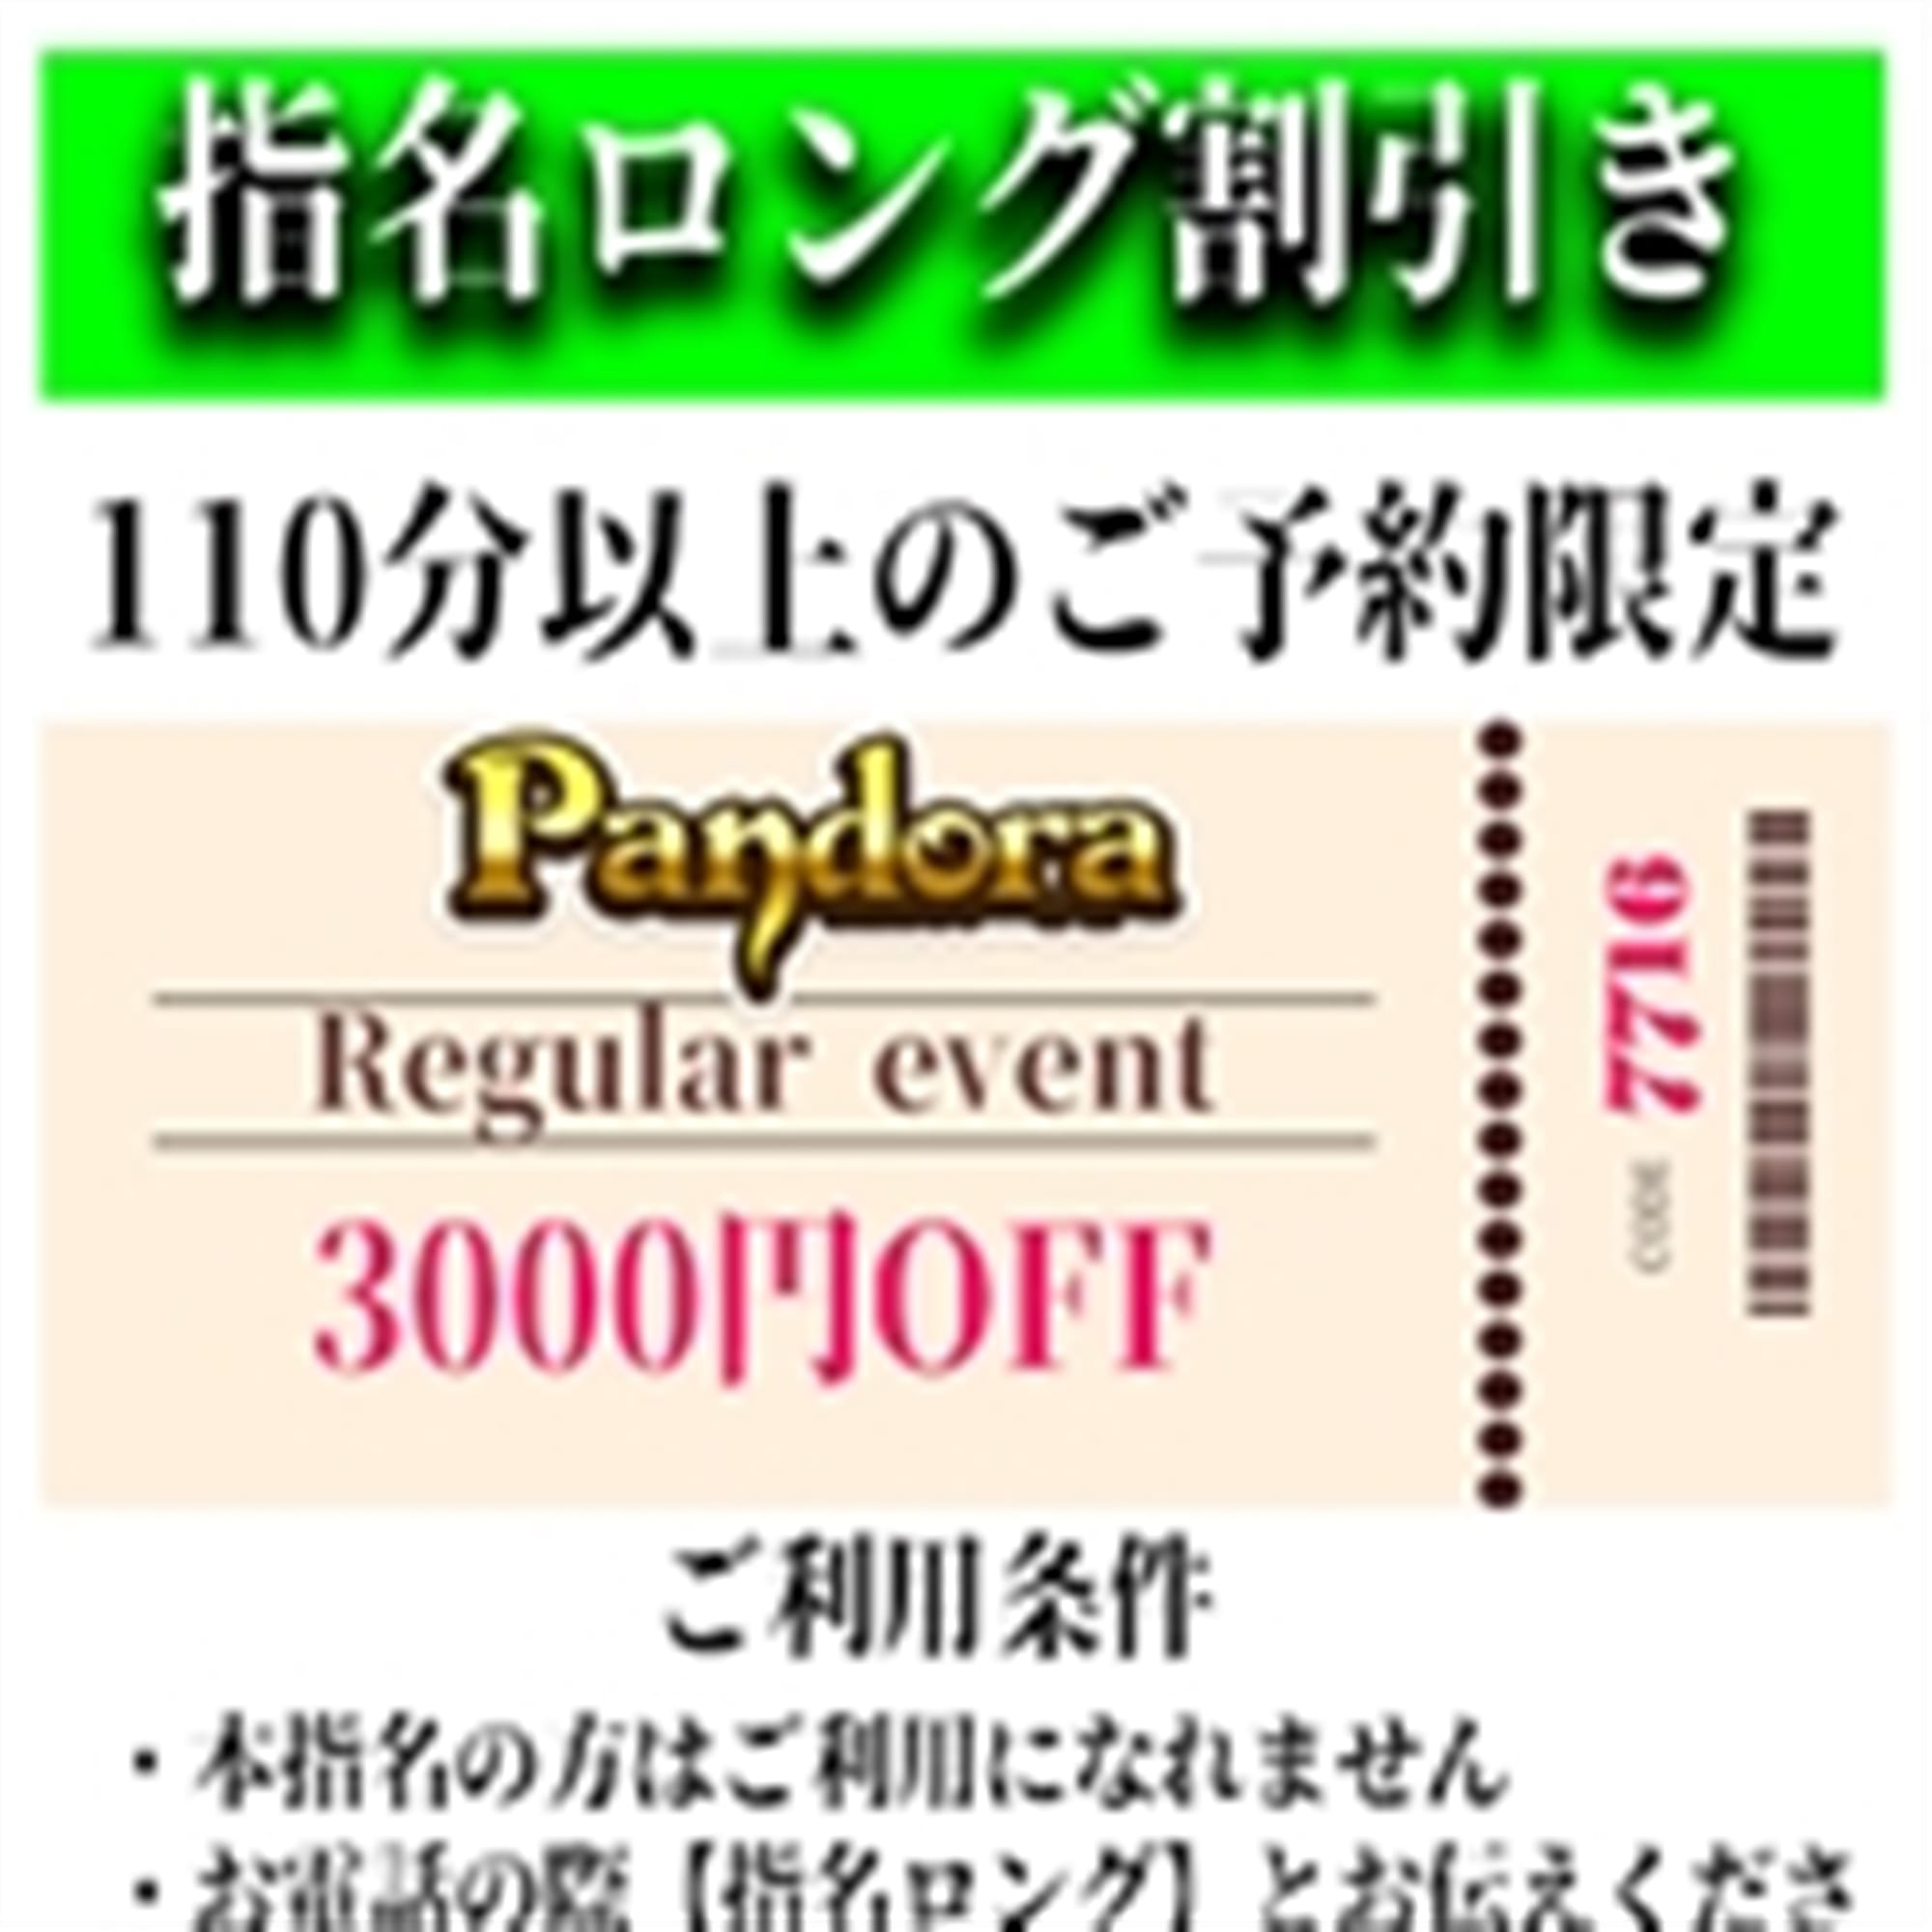 「ご指名のお客様も遊べるロングコース割引」04/26(金) 21:19 | Pandora(パンドラ)新潟のお得なニュース